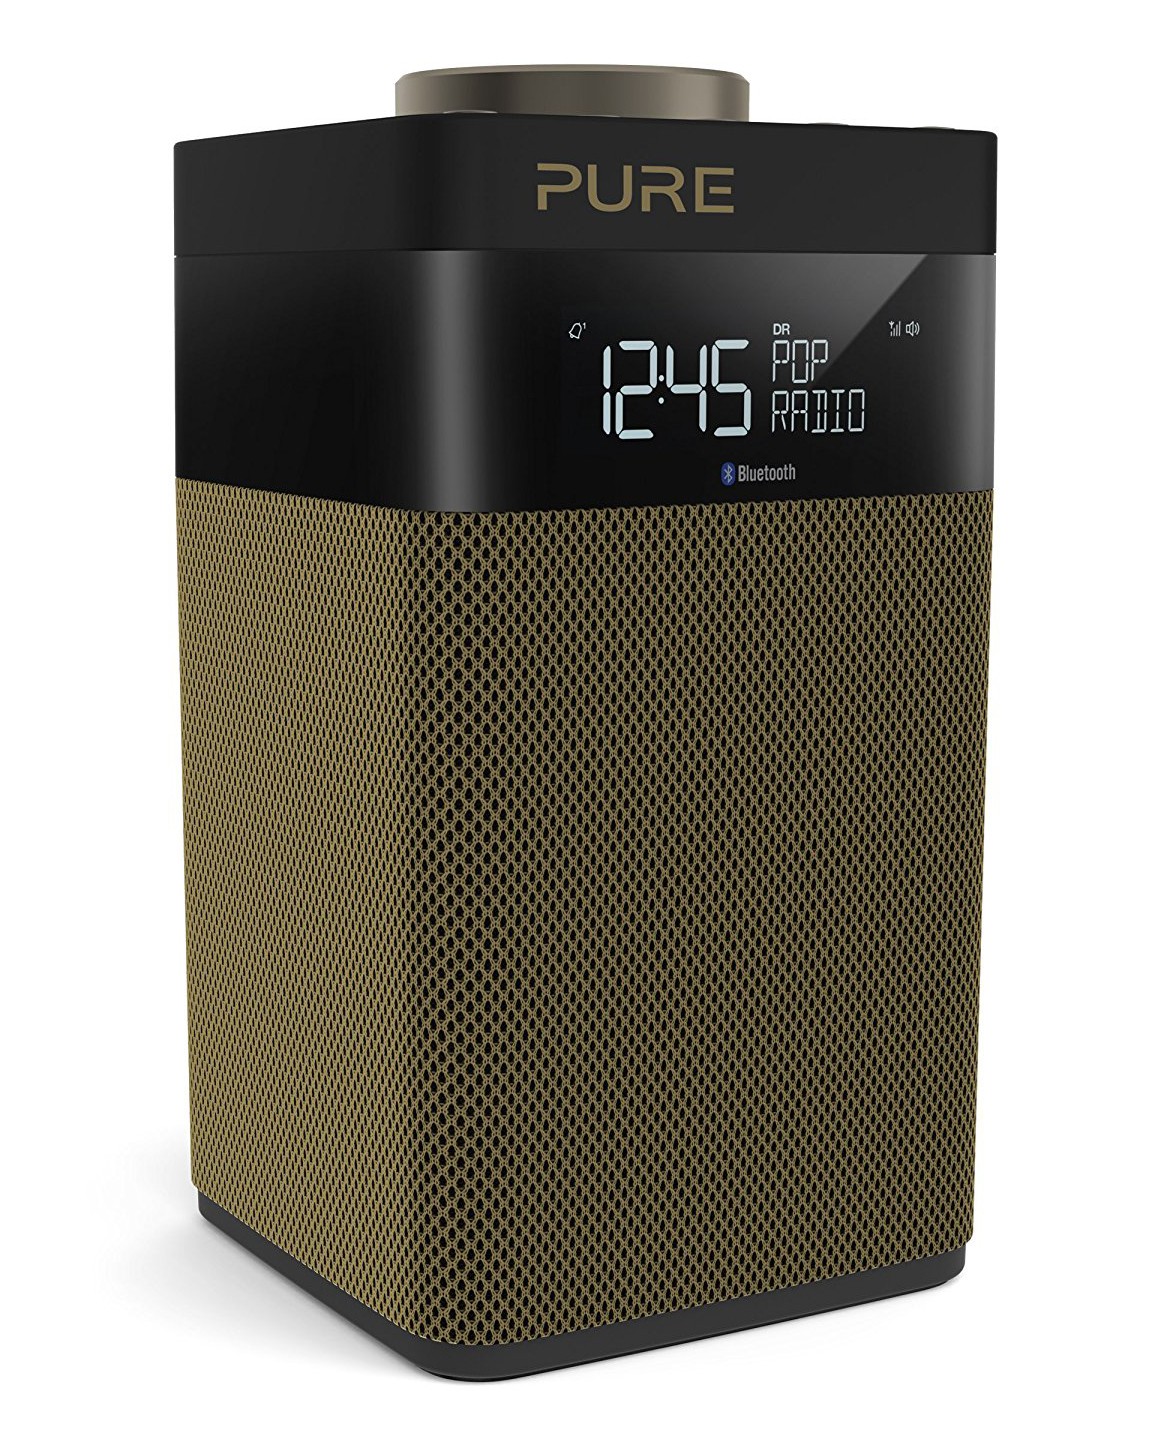 Pure - Pop Midi S - Oro - DAB / DAB + / Radio FM Compatta e Portatile con  Bluetooth - Radio Digitale di Alta Qualità - Avvenice